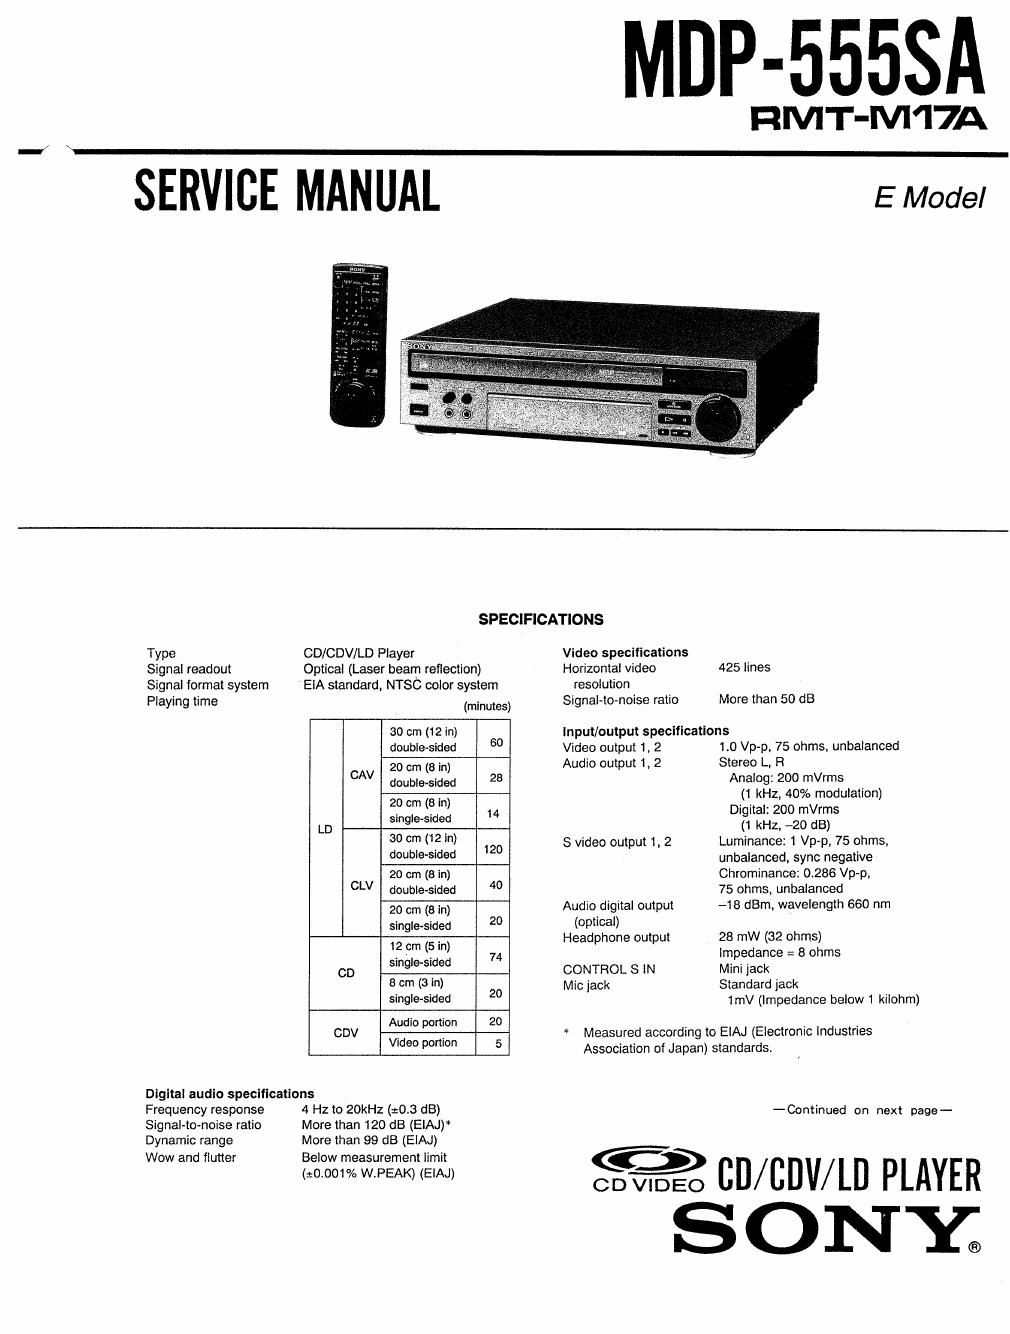 sony mdp 555 sa service manual